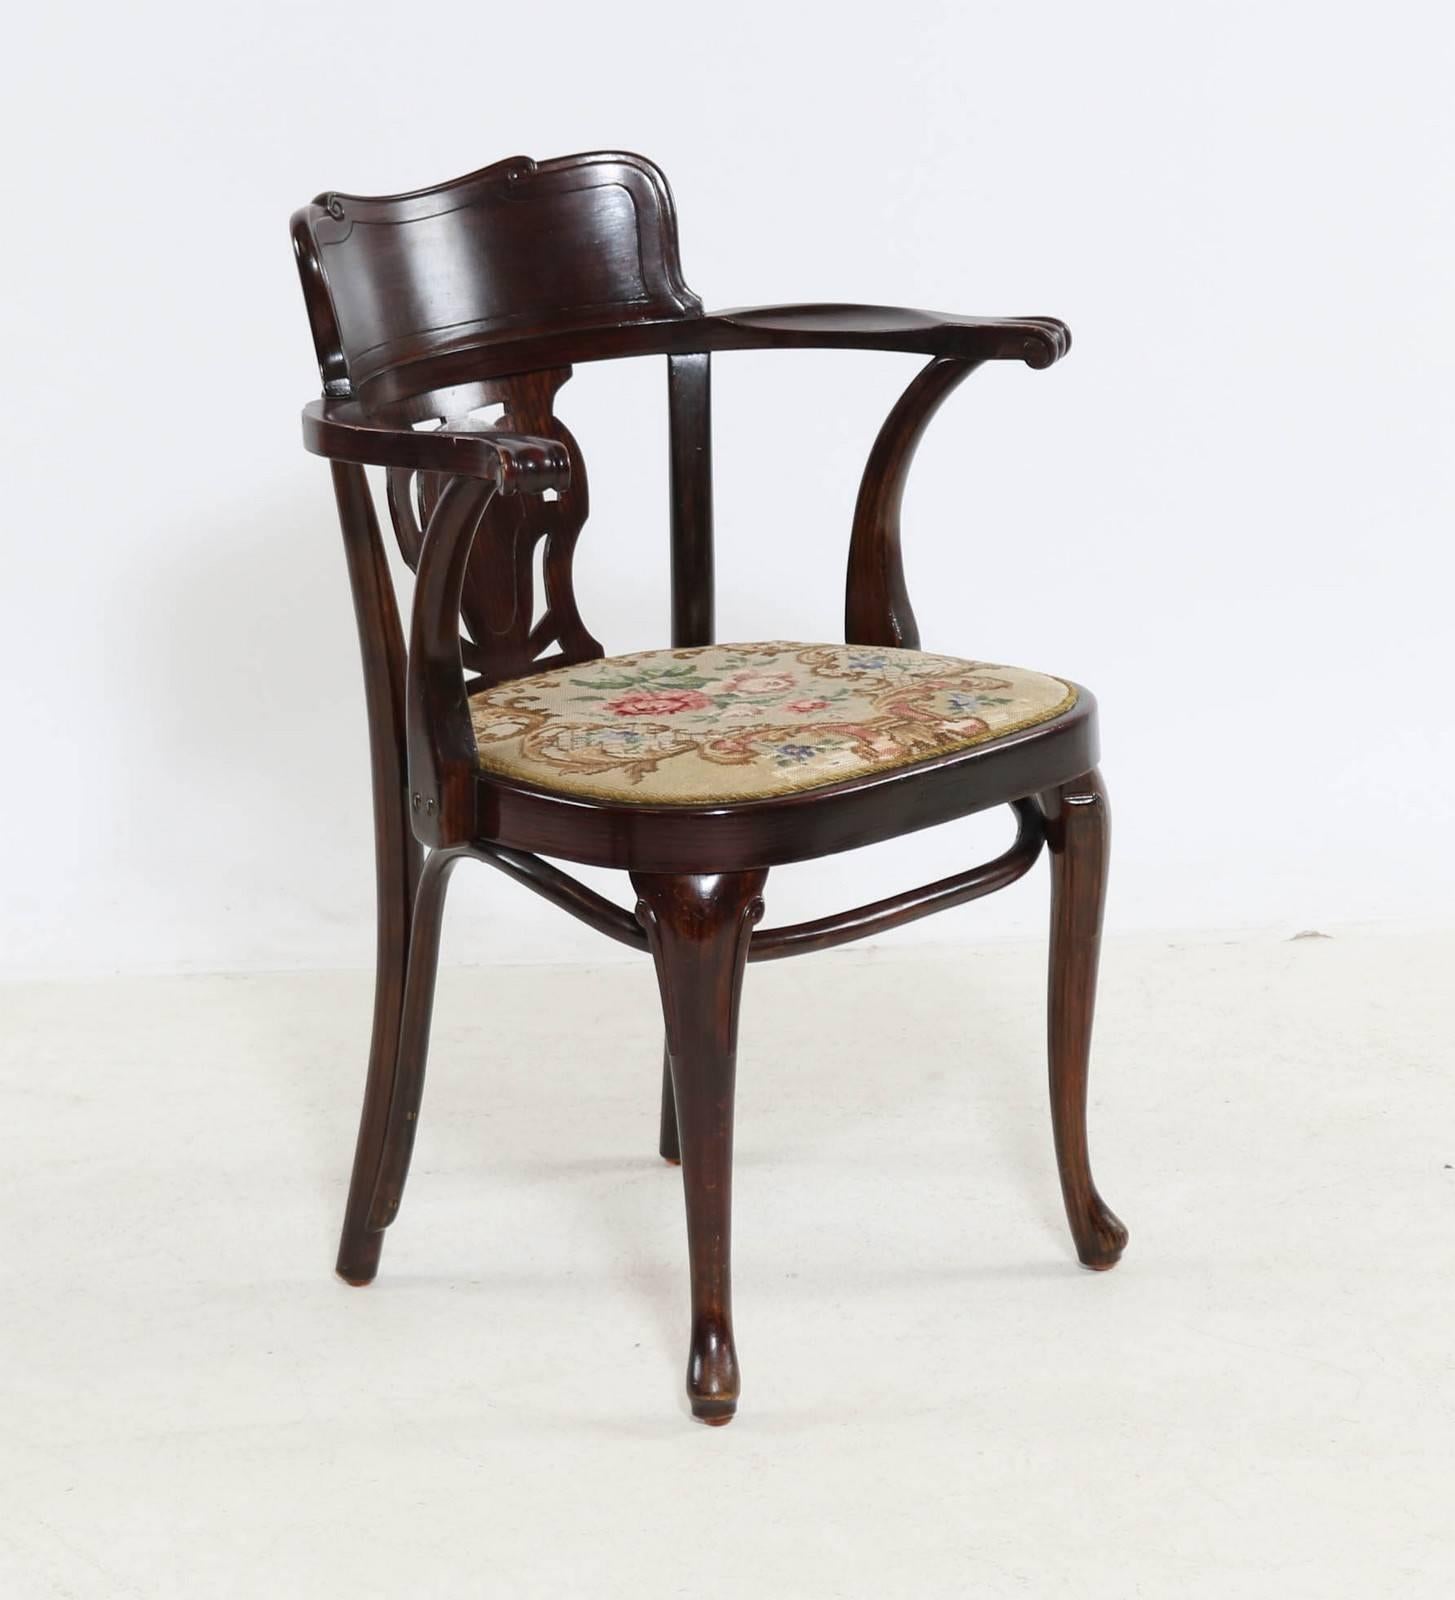 Bois courbé en hêtre teinté brun foncé avec un siège rembourré de la fin des années 1930.